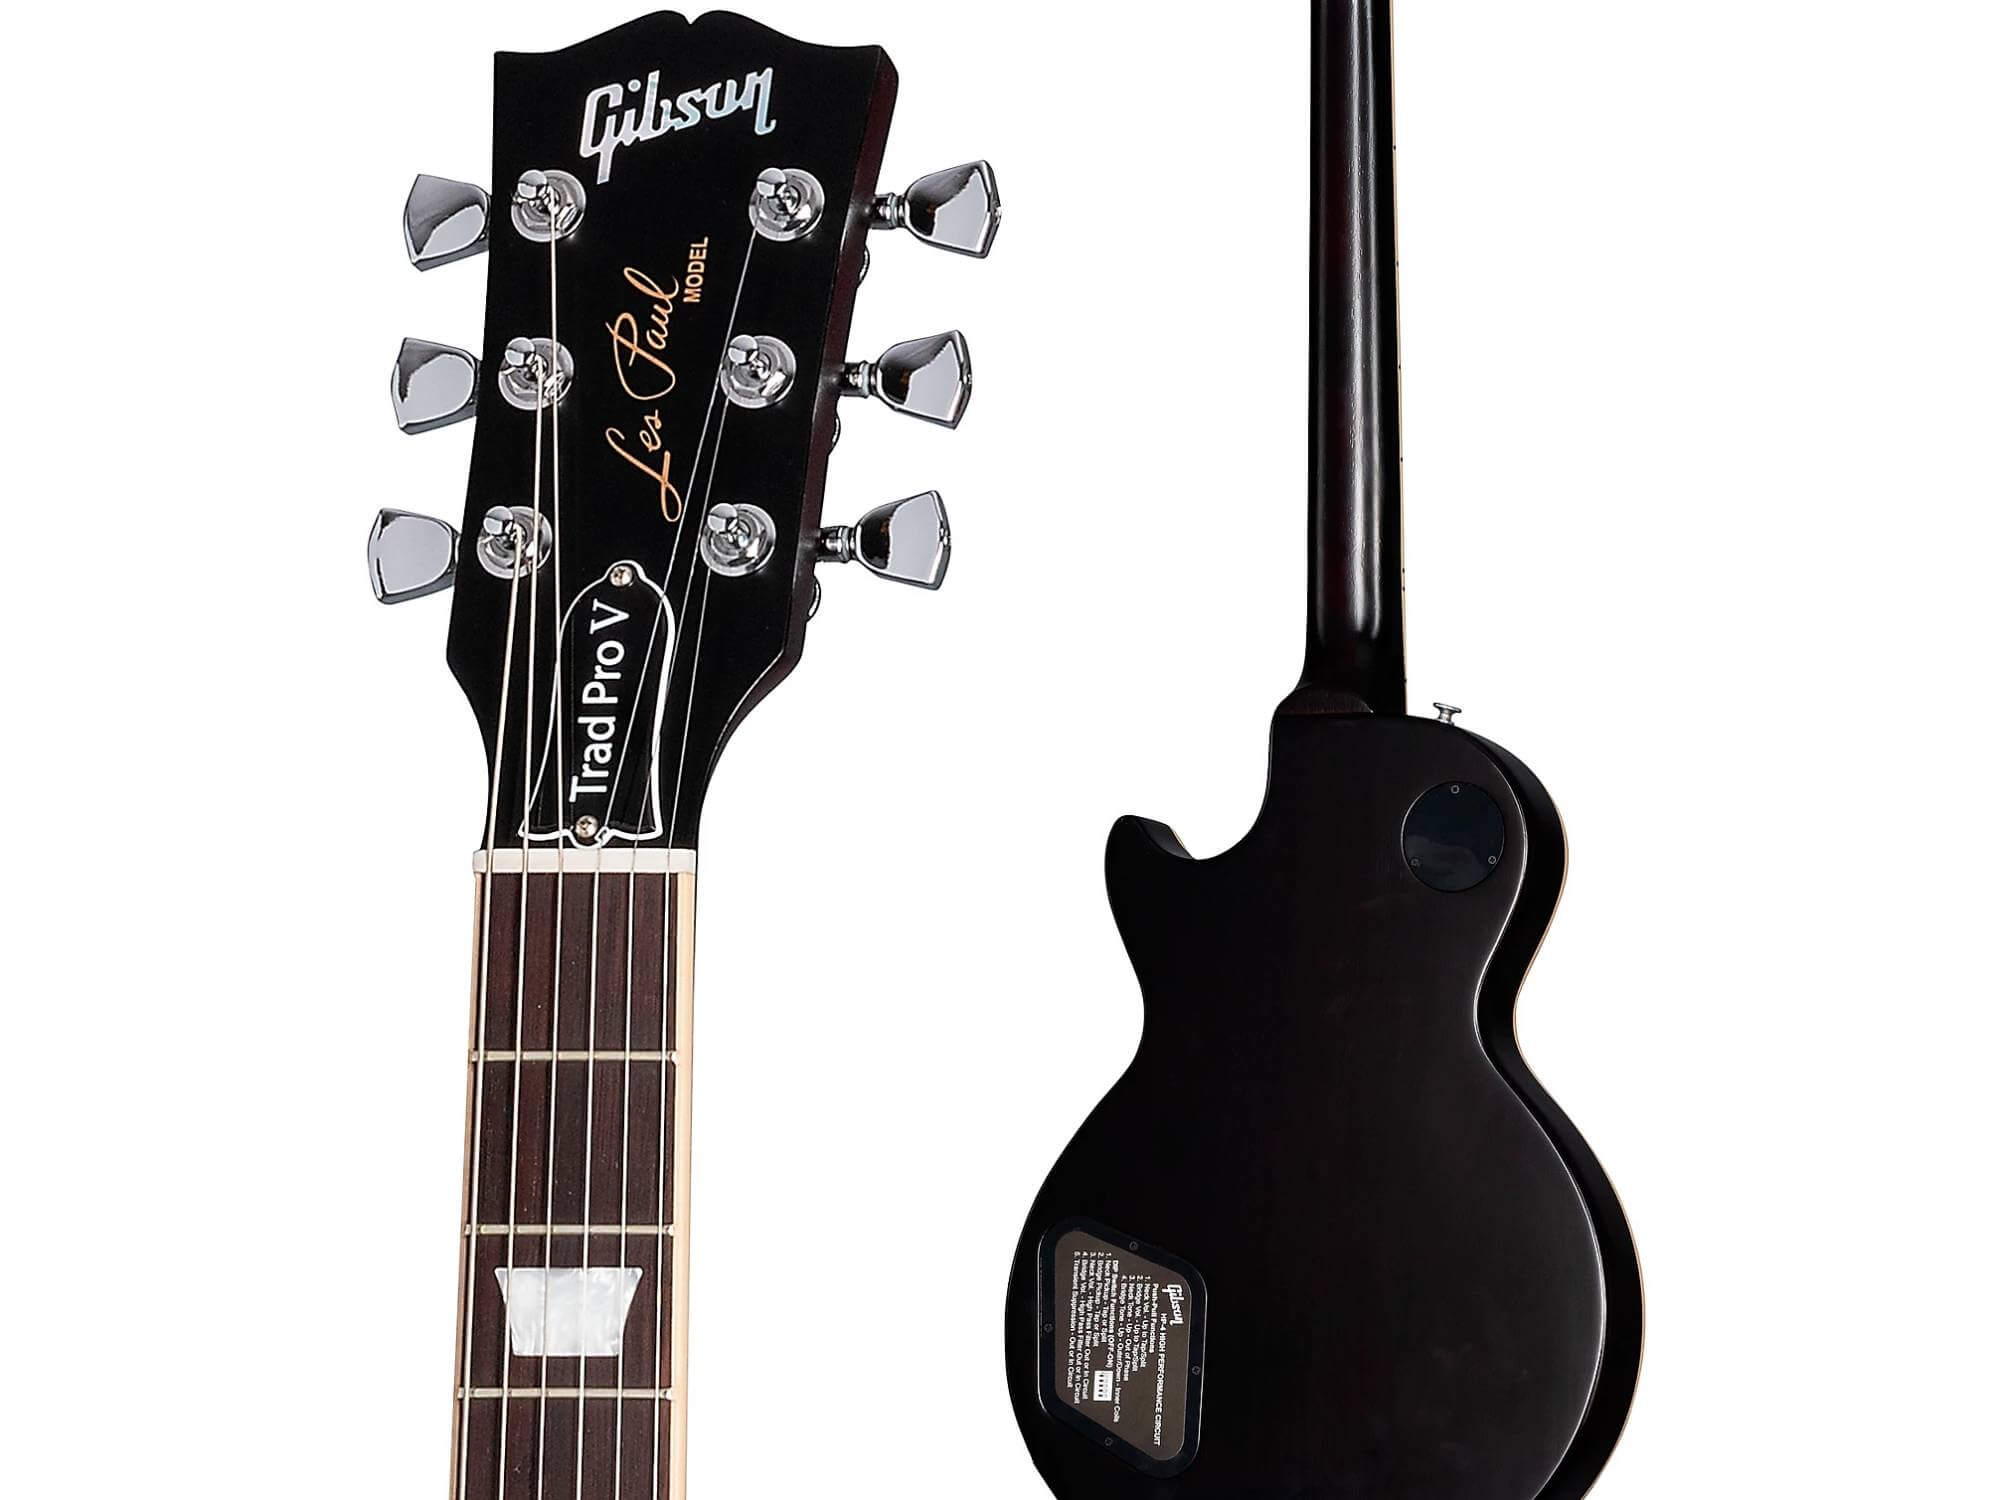 Gibson Pro V Desert Burst body